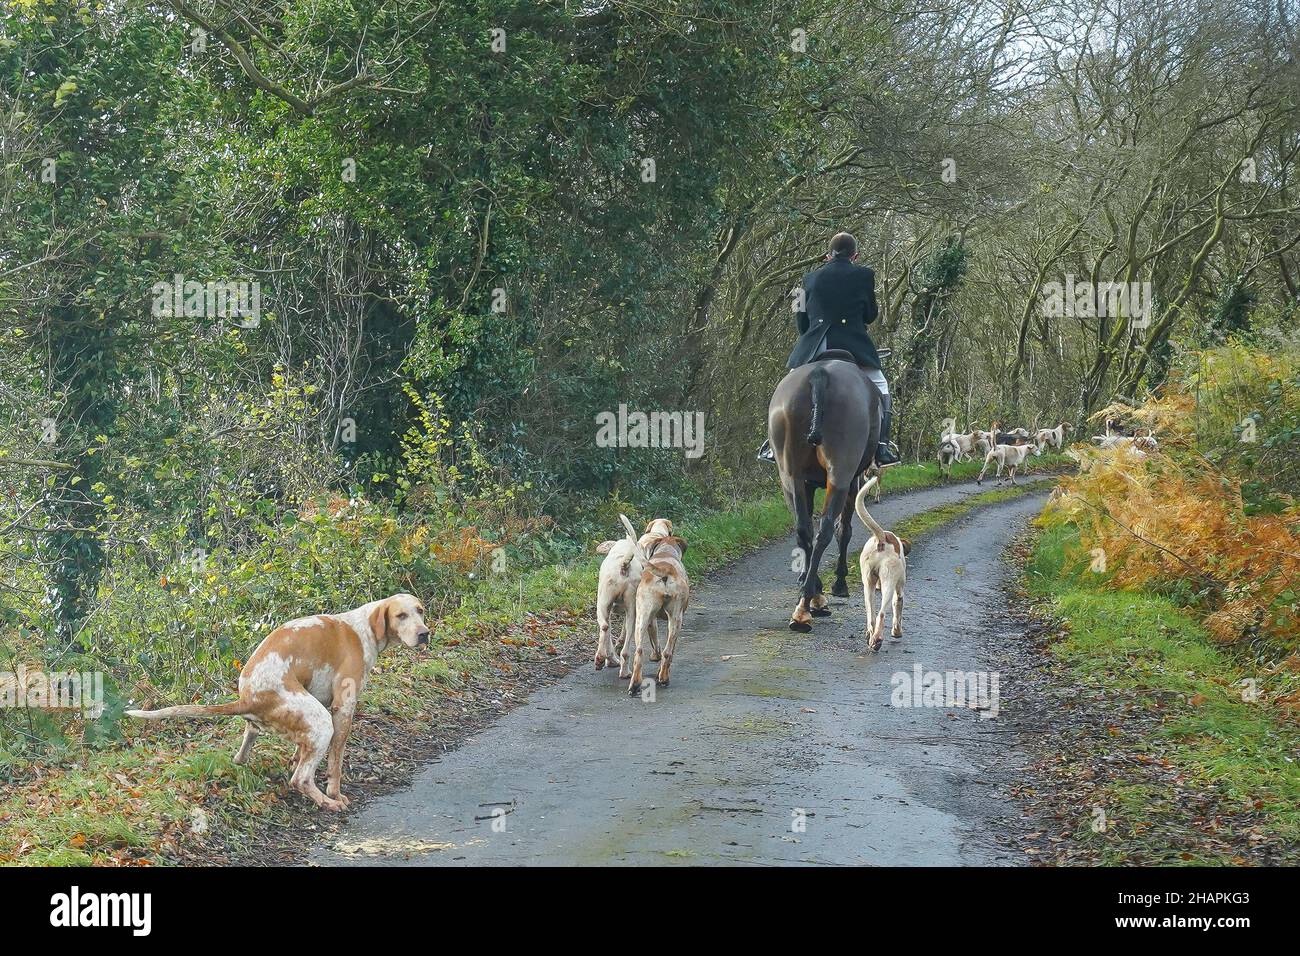 Regno Unito caccia alla volpe con cavalli e hounds in corsia di campagna. Fastidio di foxhounds lasciando il cane disordine nella strada pubblica e causando l'ostruzione al traffico. Foto Stock